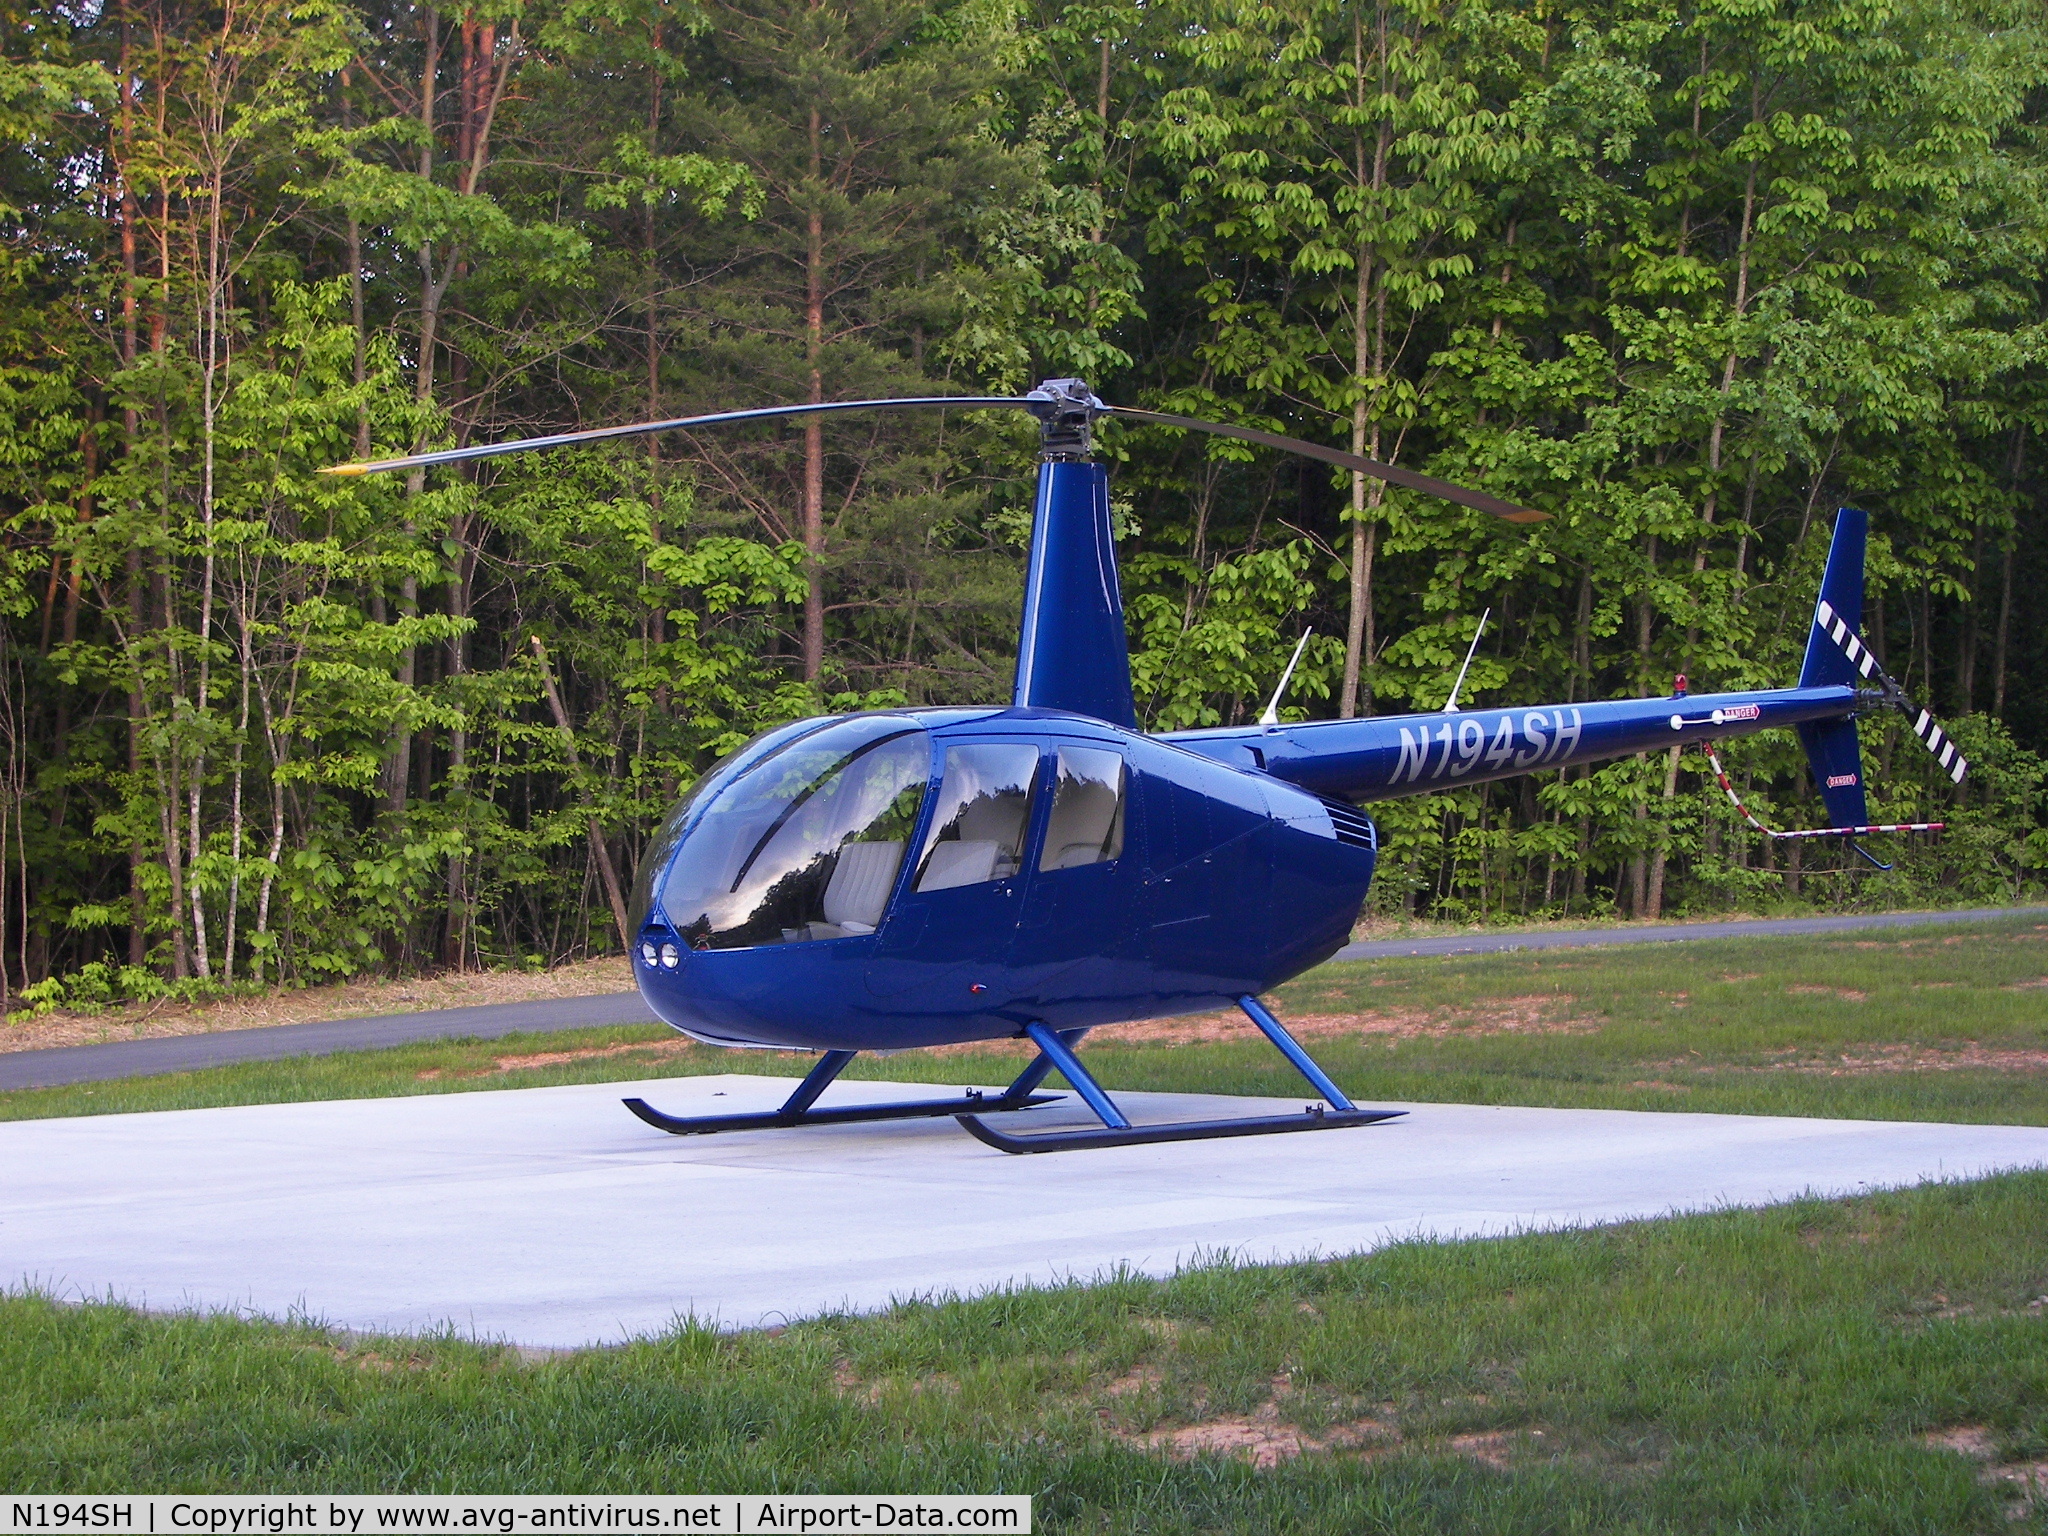 N194SH, 2007 Robinson R44 II C/N 11734, N194SH - Viper Blue R44-II